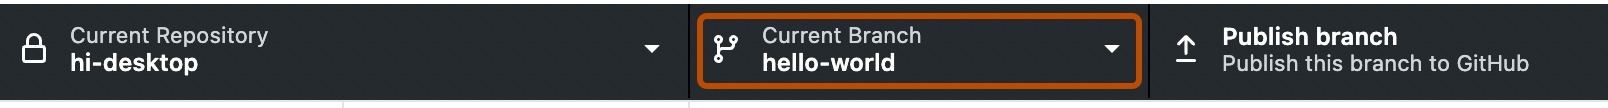 Captura de tela da barra do repositório. Um botão chamado "Ramo Atual" com uma seta para baixo indicando um menu suspenso é contornado em laranja.